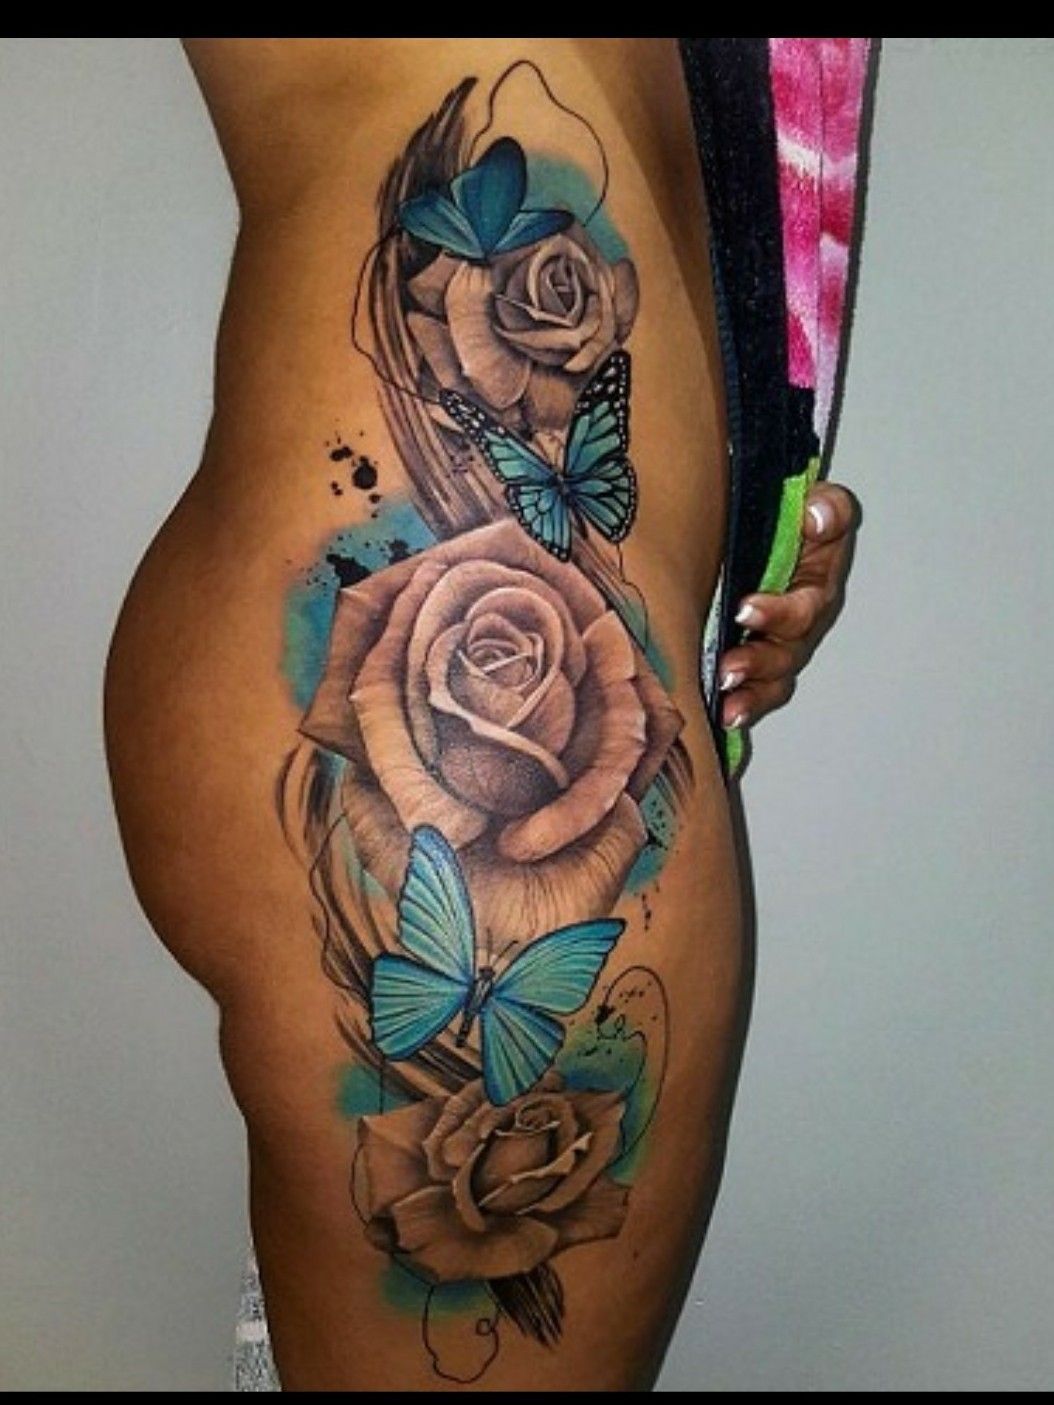 Butterflies and roses  Flower leg tattoos Butterfly leg tattoos Thigh  tattoos women